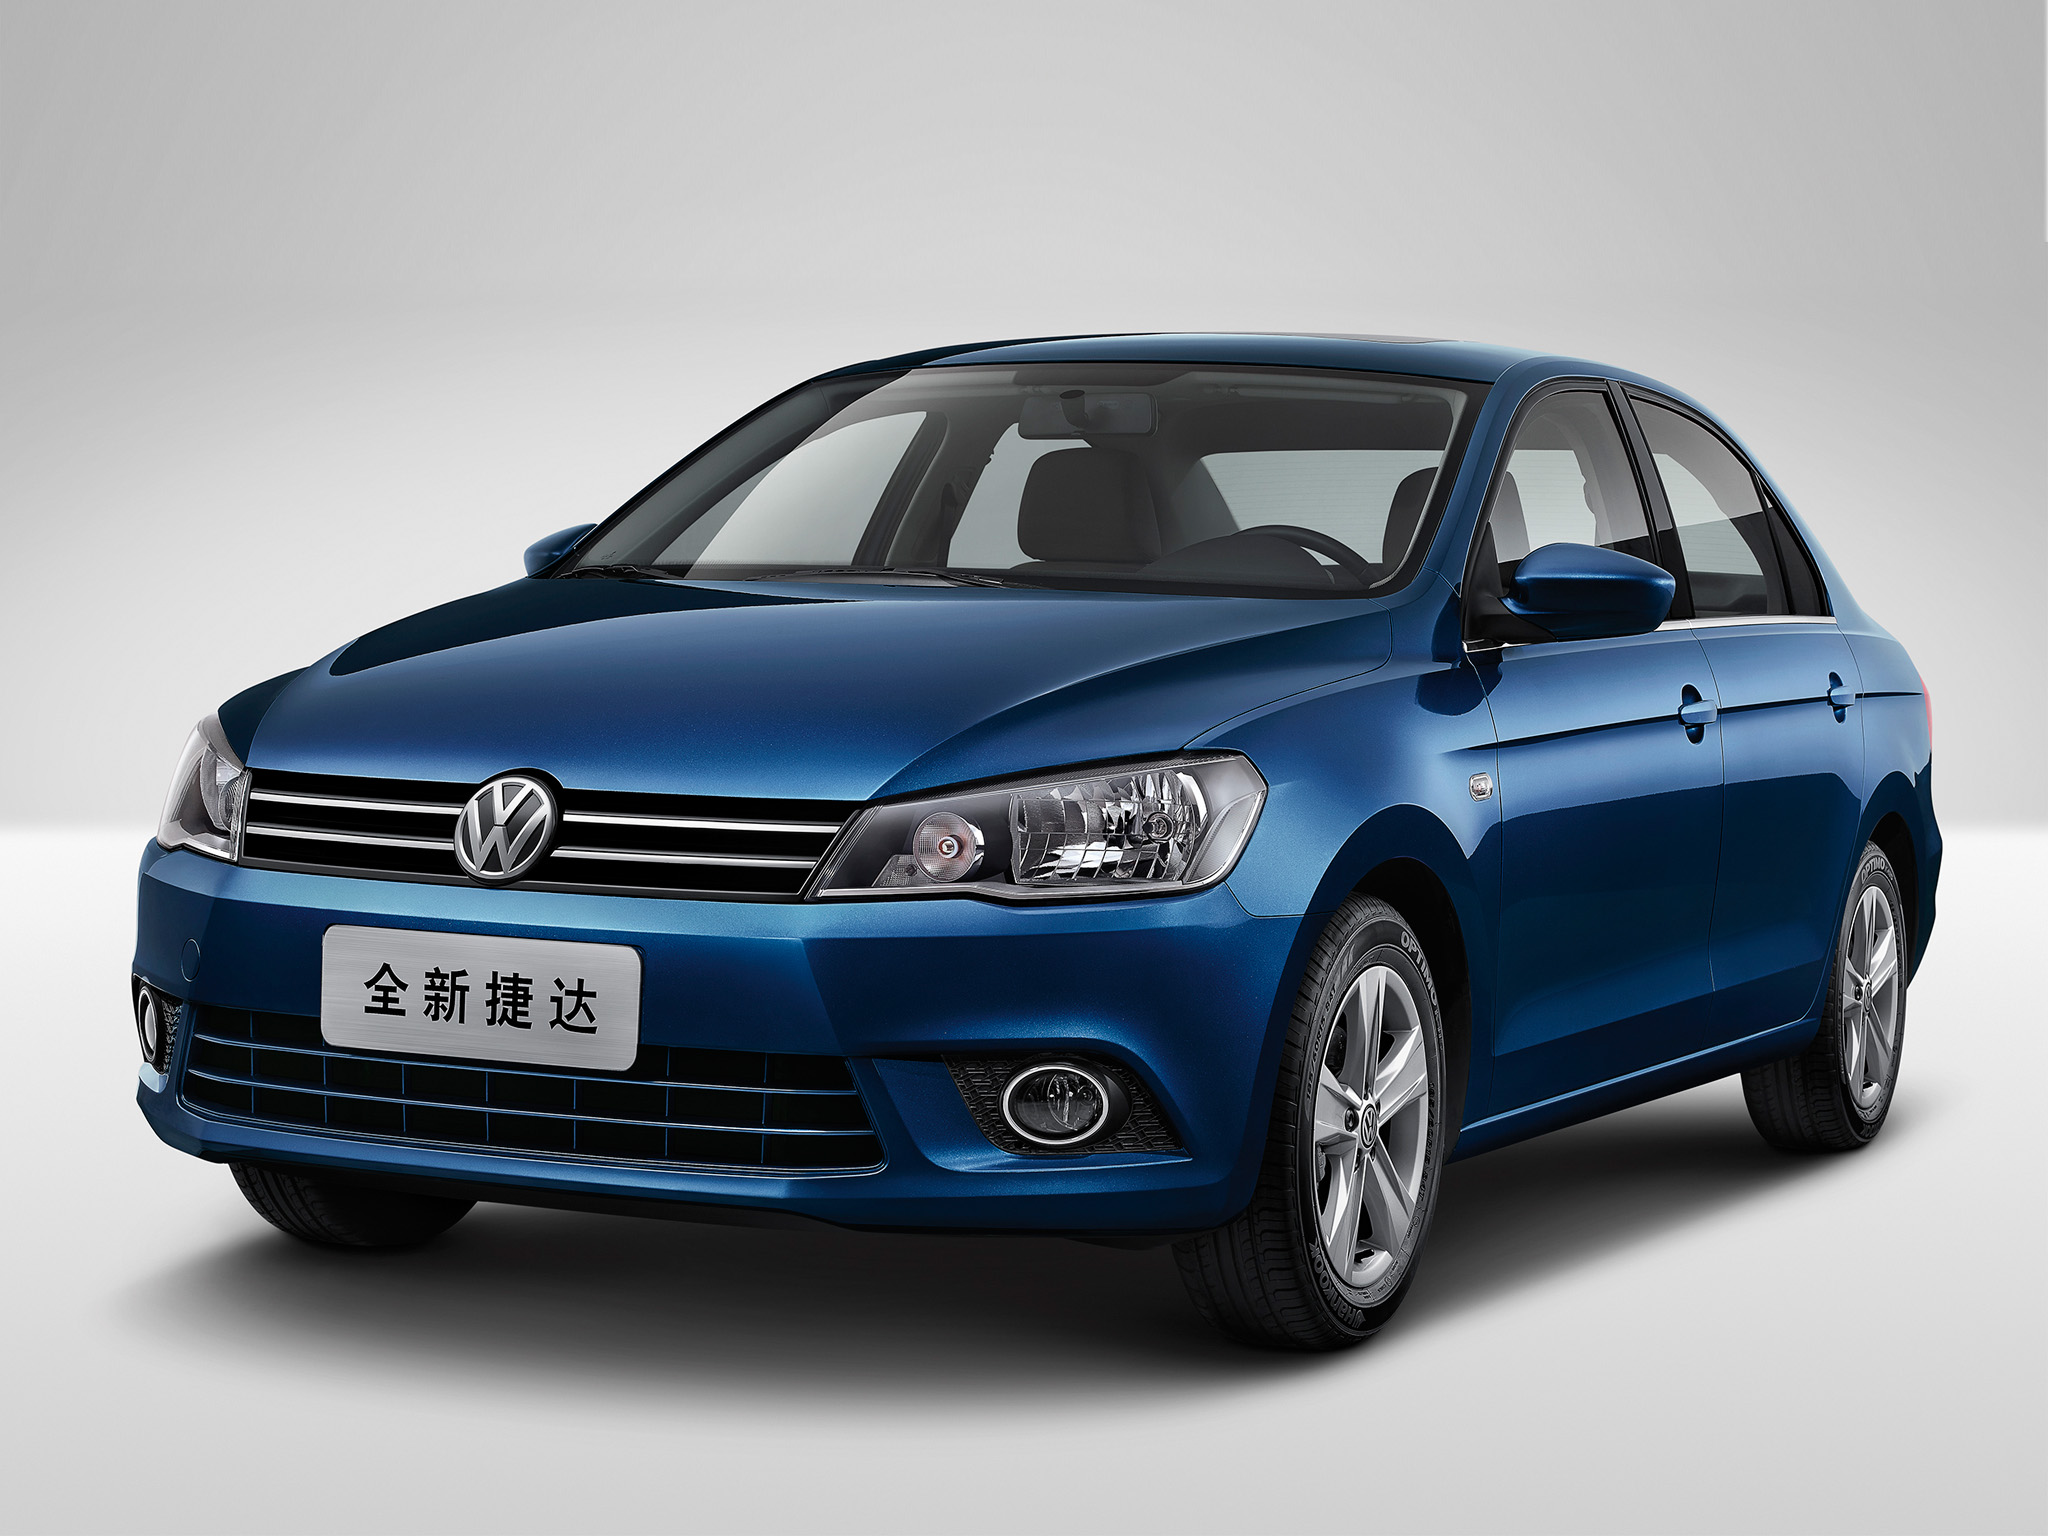 Chinese-market Volkswagen Jetta